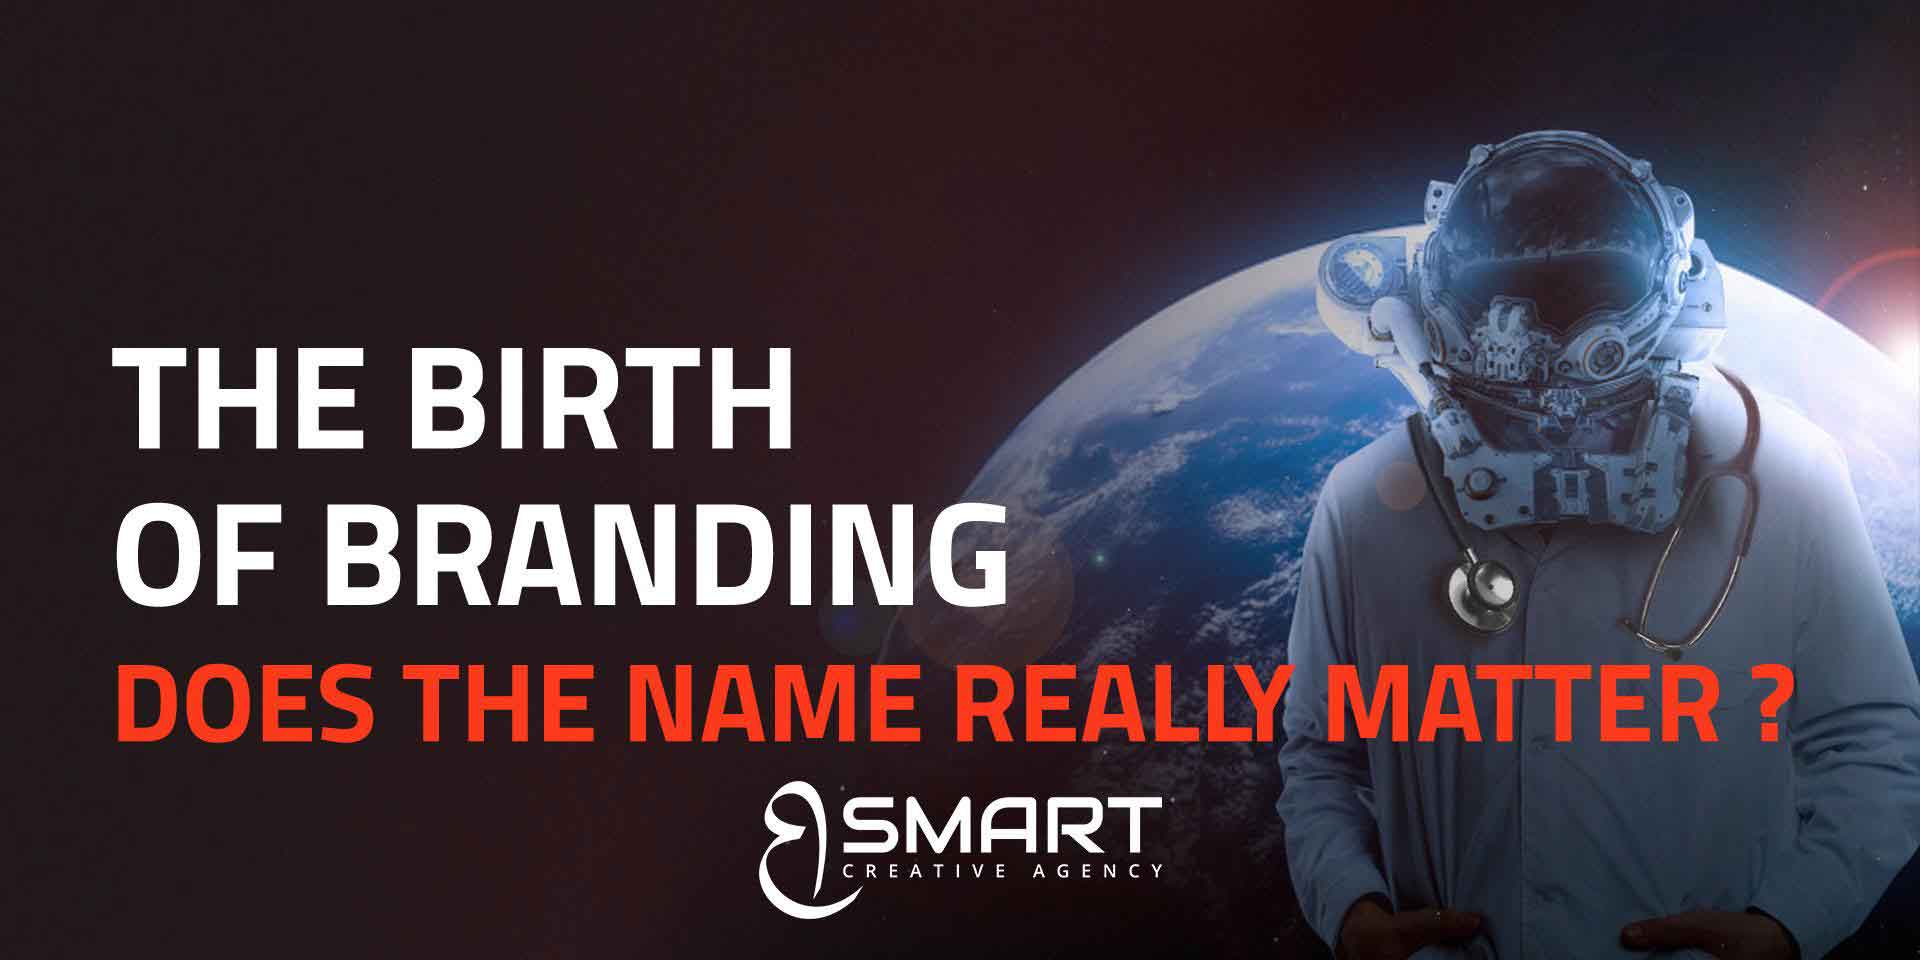 The birth of Branding